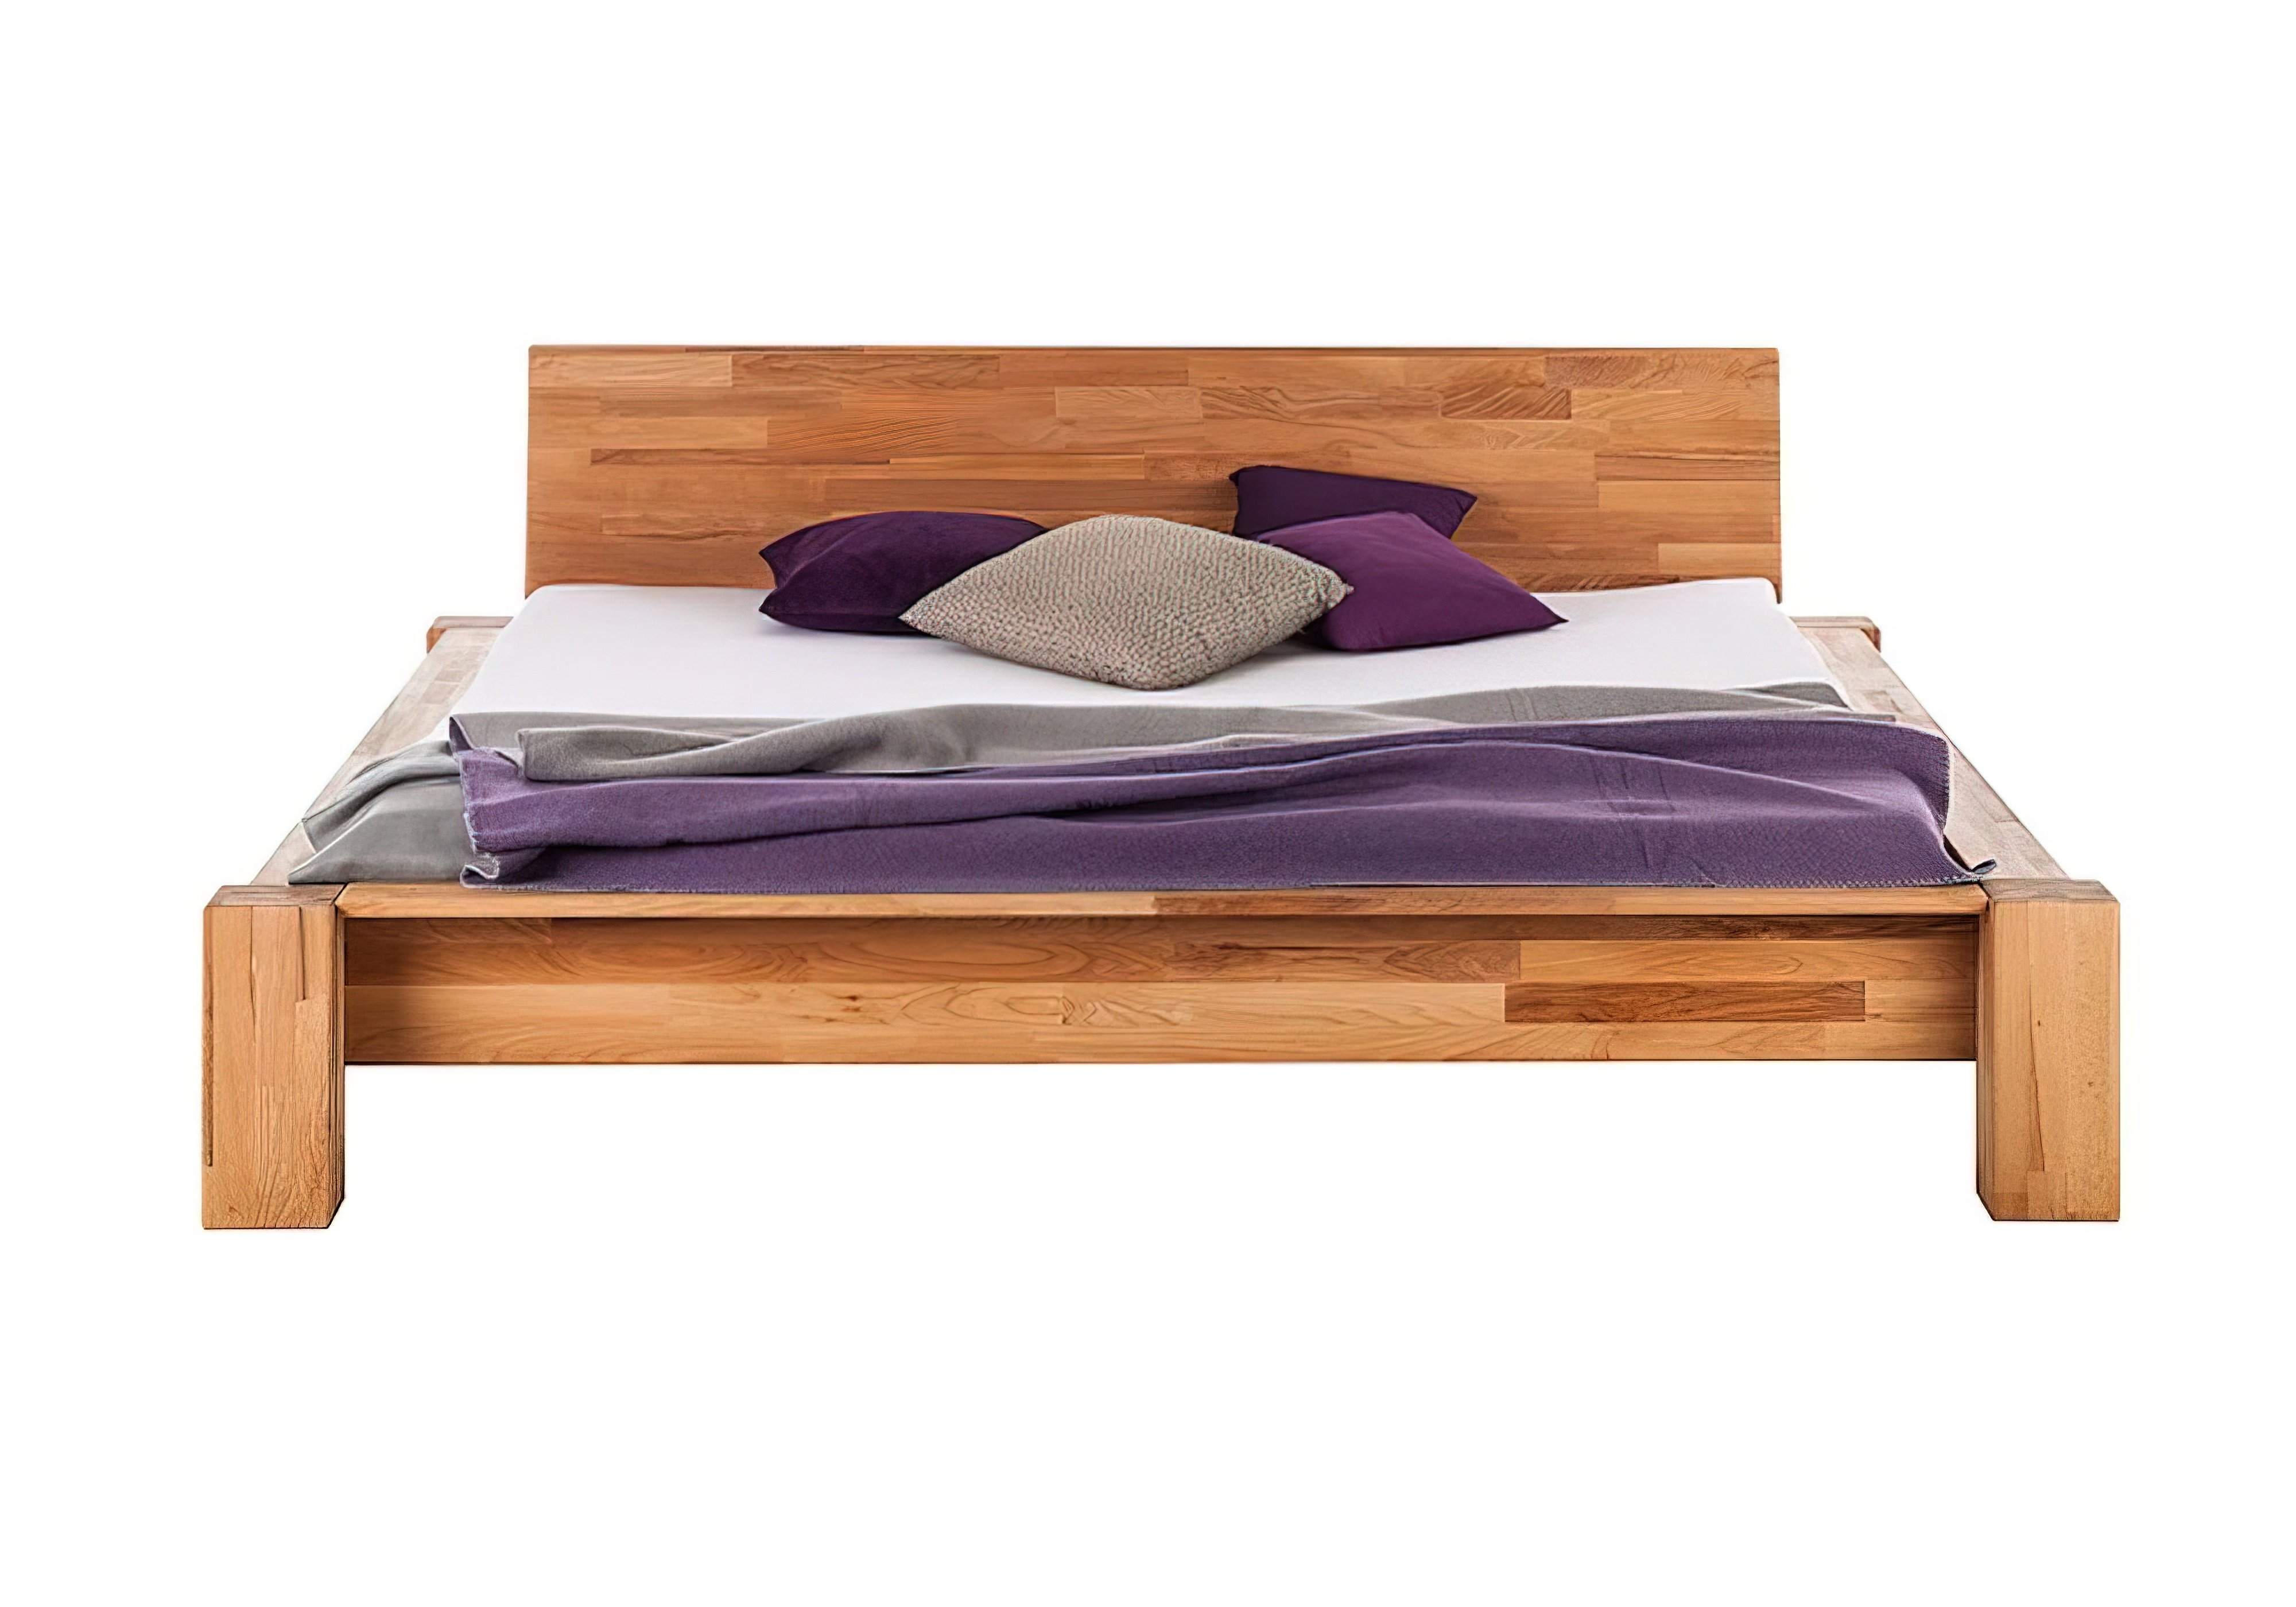  Купить Деревянные кровати Кровать "b114" Mobler